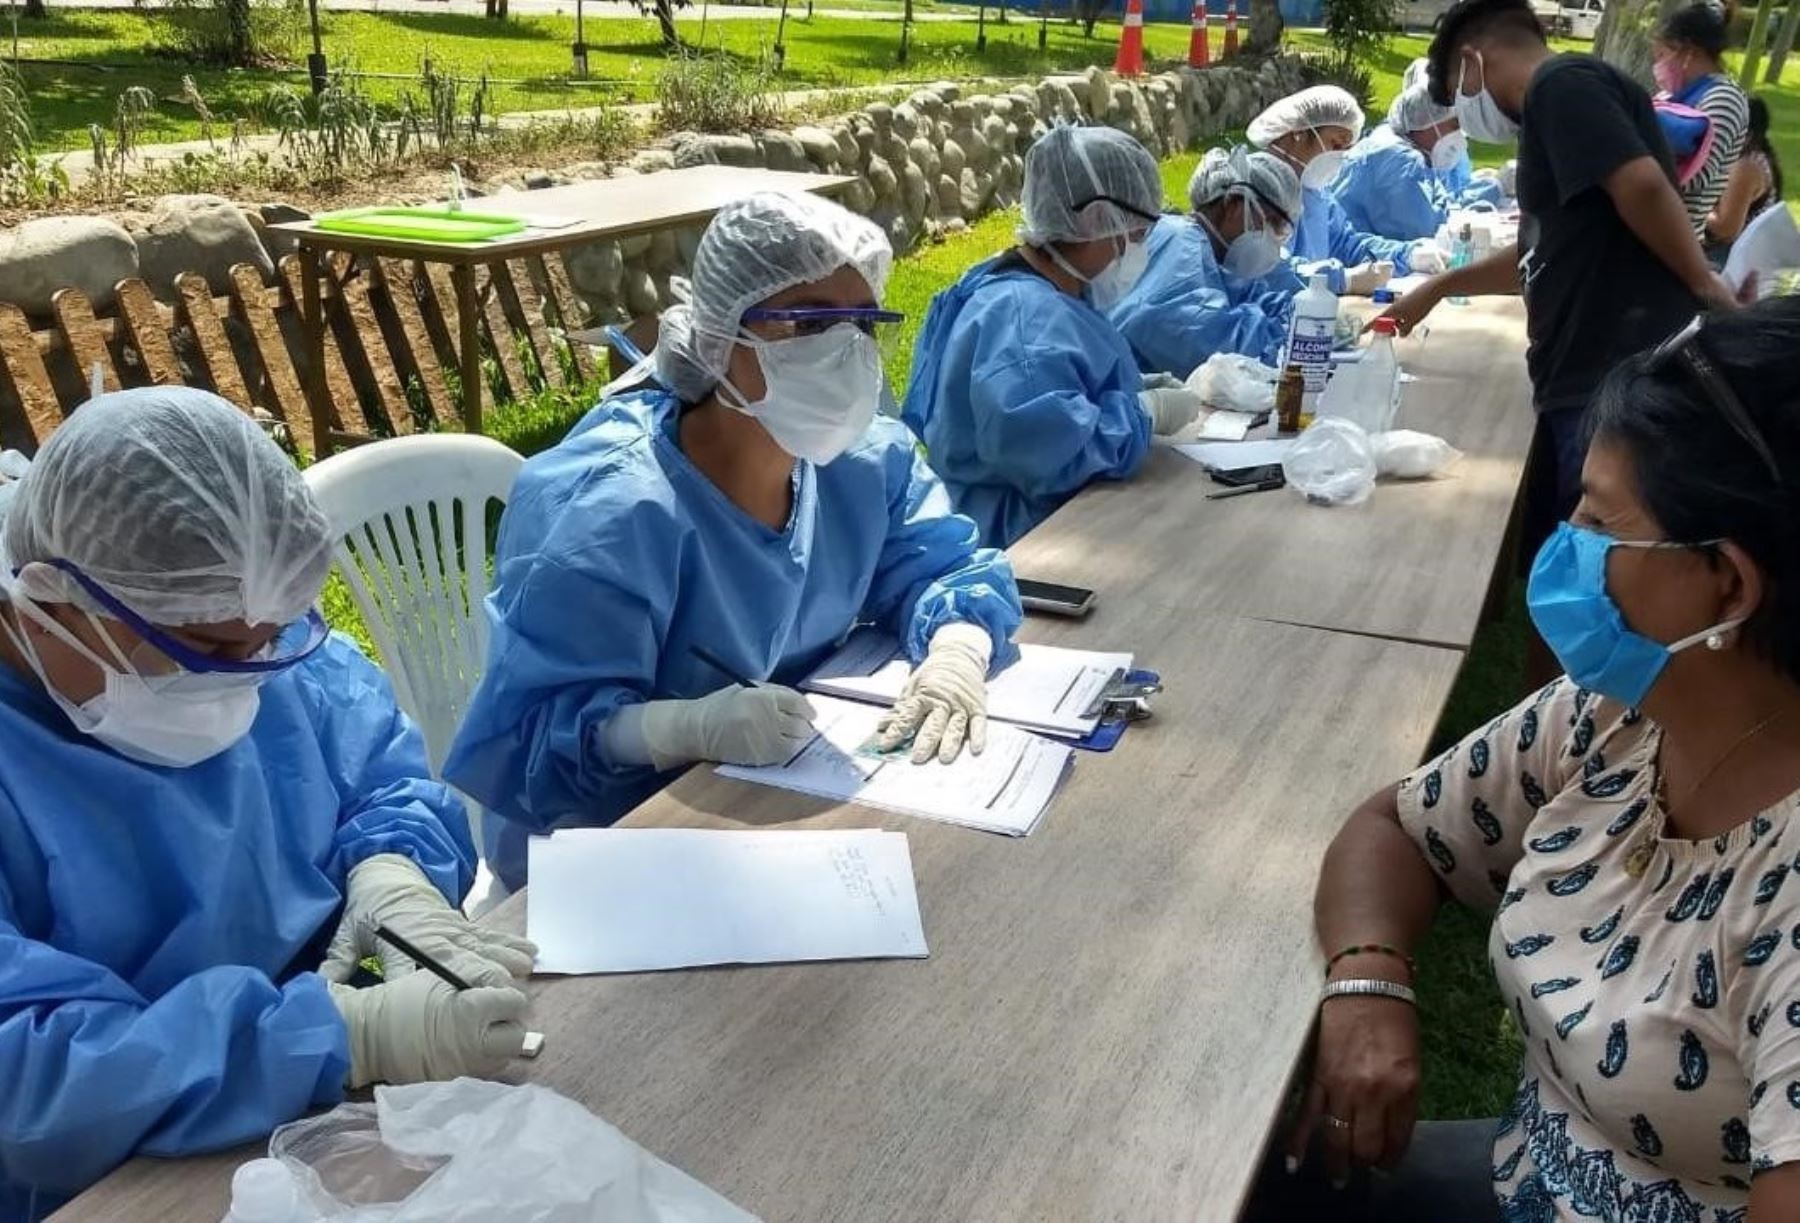 Brigadistas del Ministerio de Salud brindan evaluación médica y tamizaje a los que viajan de retorno a sus regiones para prevenir la propagación del coronavirus (covid-19). ANDINA/Difusión